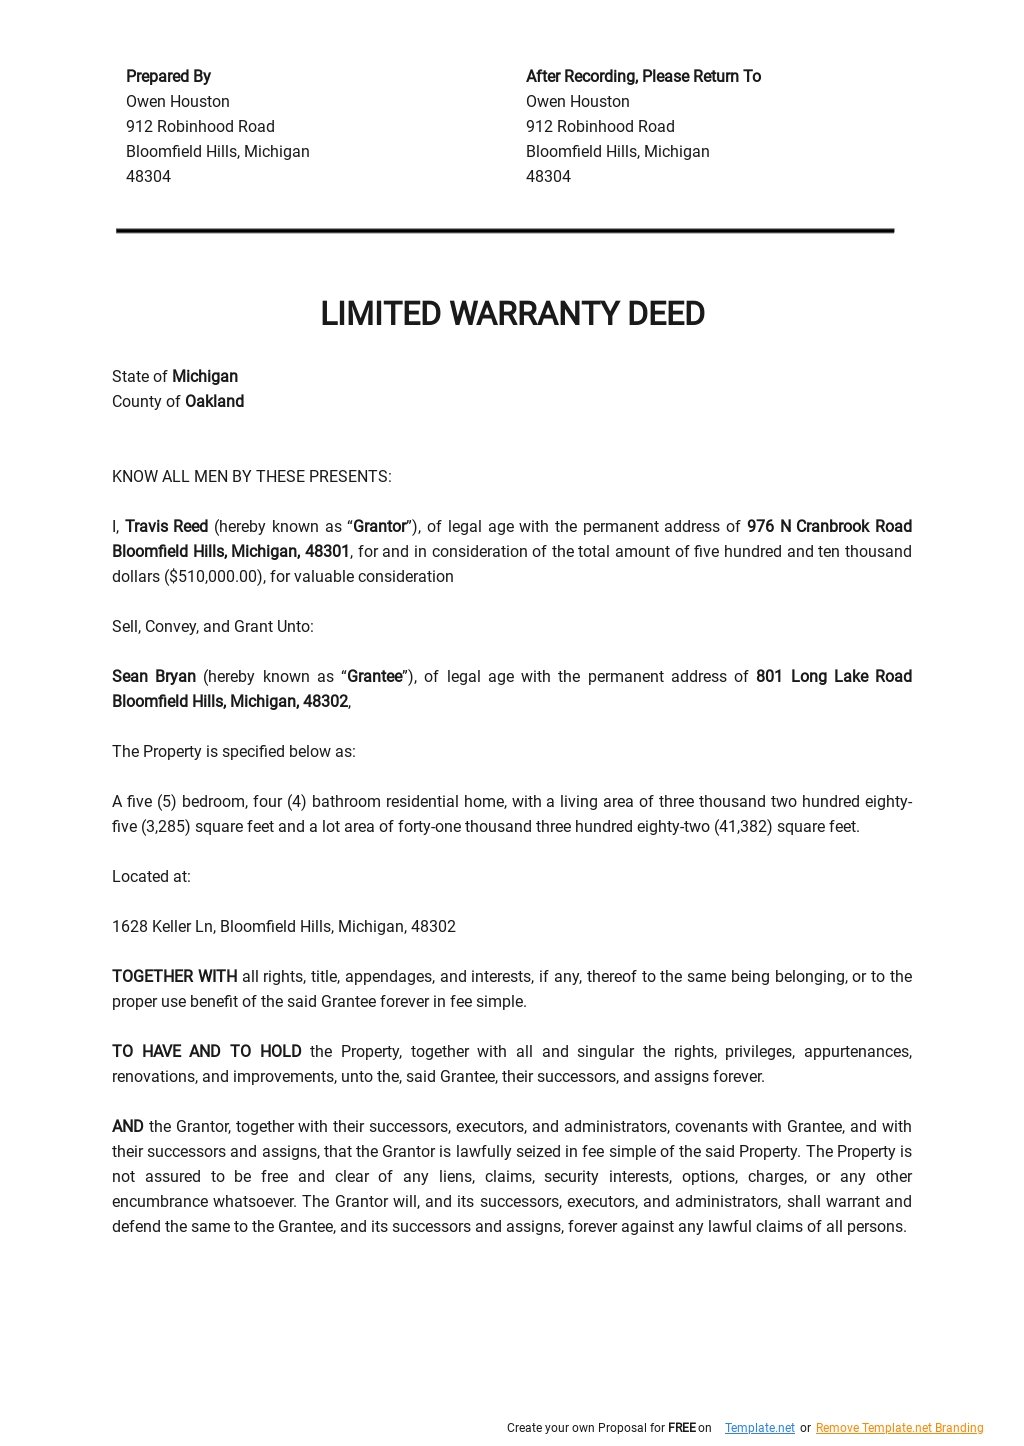 Limited Warranty Deed Template